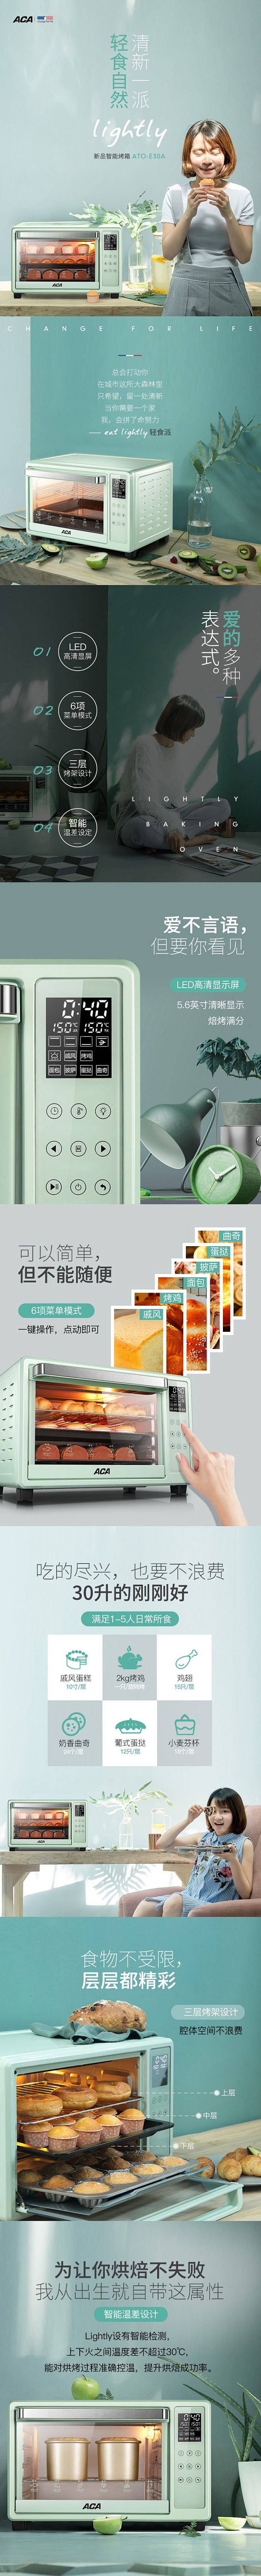 烤箱-绿色.jpg